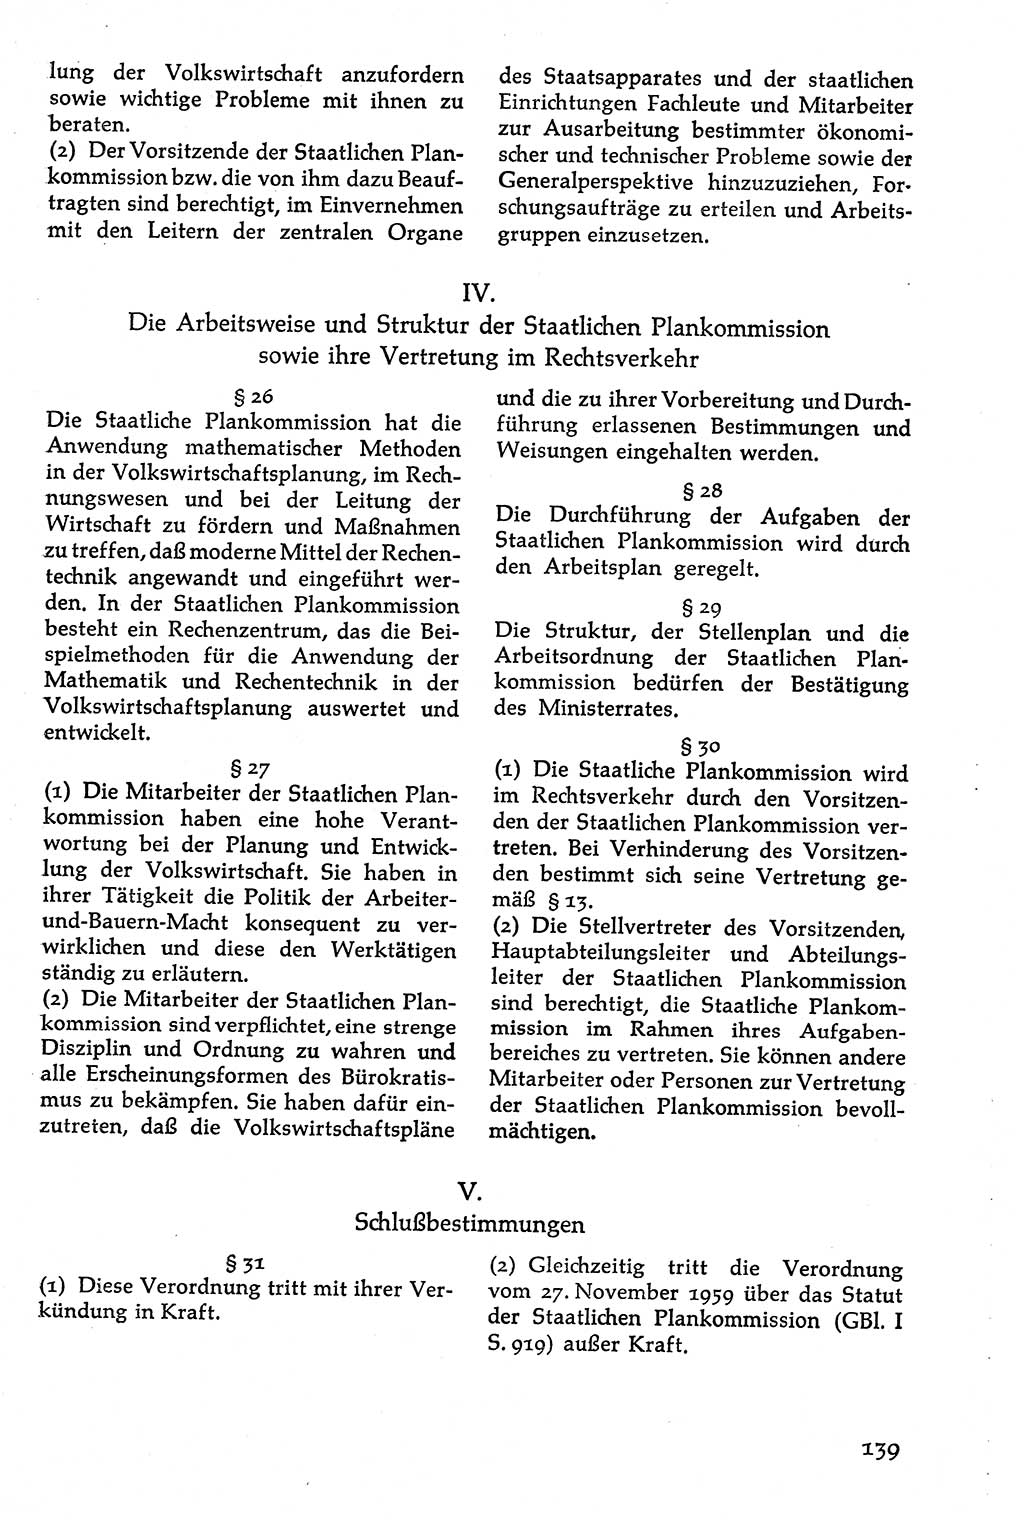 Volksdemokratische Ordnung in Mitteldeutschland [Deutsche Demokratische Republik (DDR)], Texte zur verfassungsrechtlichen Situation 1963, Seite 139 (Volksdem. Ordn. Md. DDR 1963, S. 139)